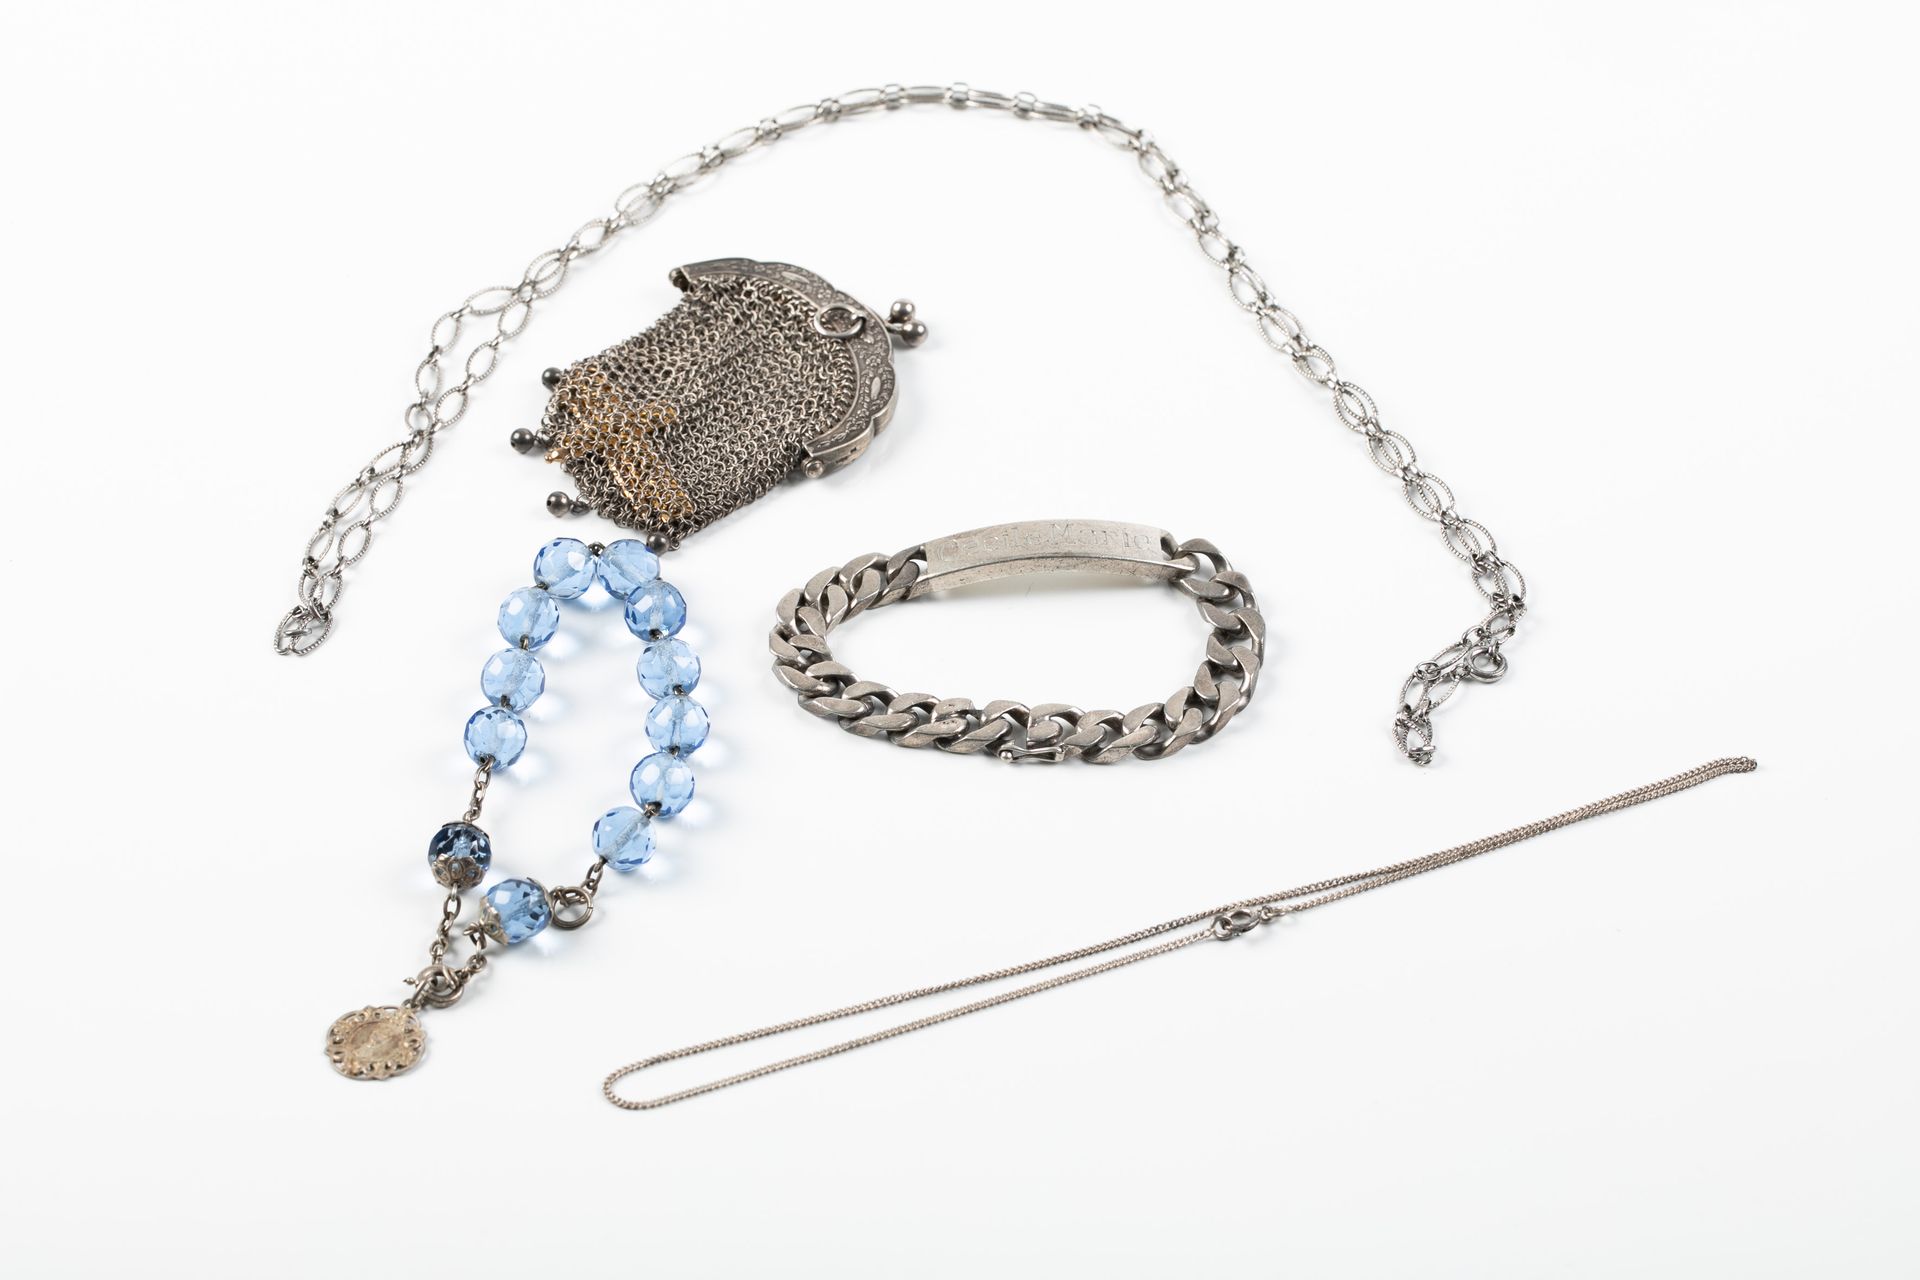 Null 银制品包括一个钱包，一个身份证，一条长项链，一条链子和一个蓝珍珠手镯。重量：95.95克